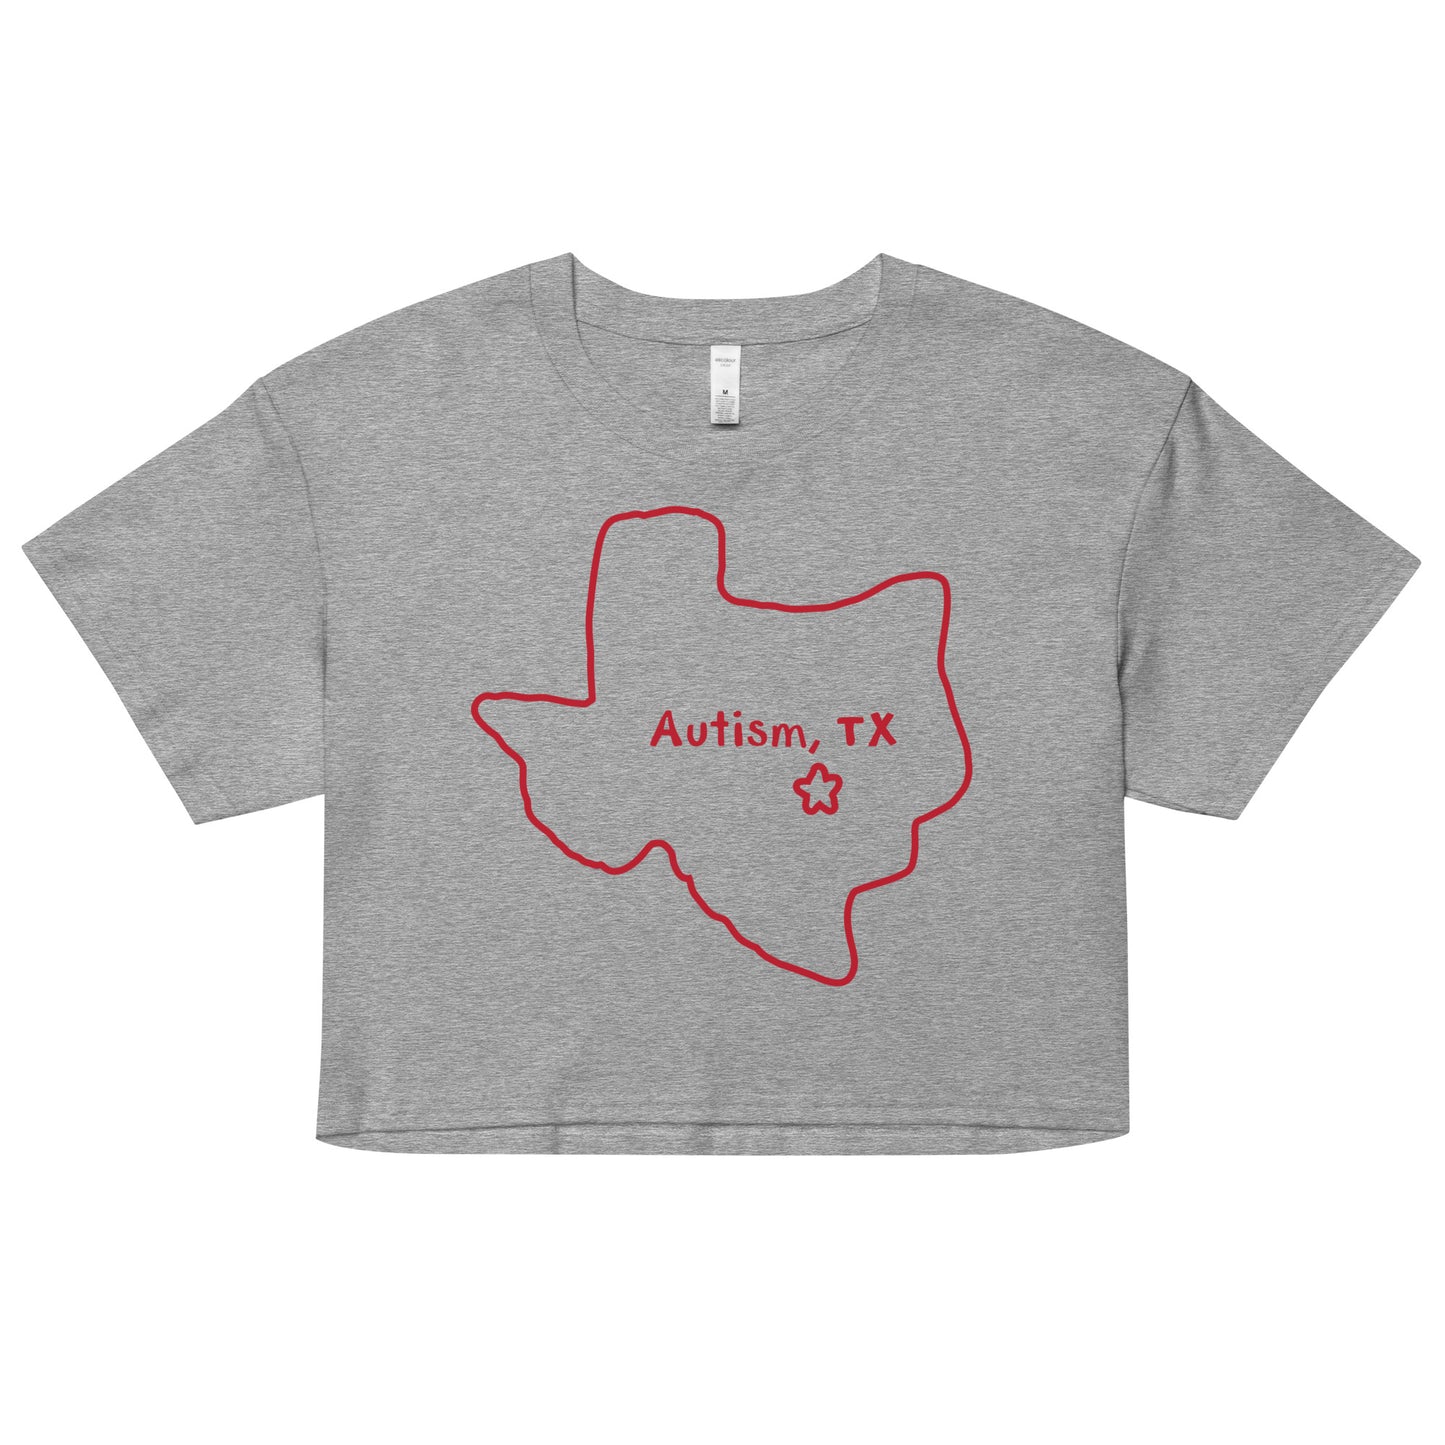 Autism Texas crop top